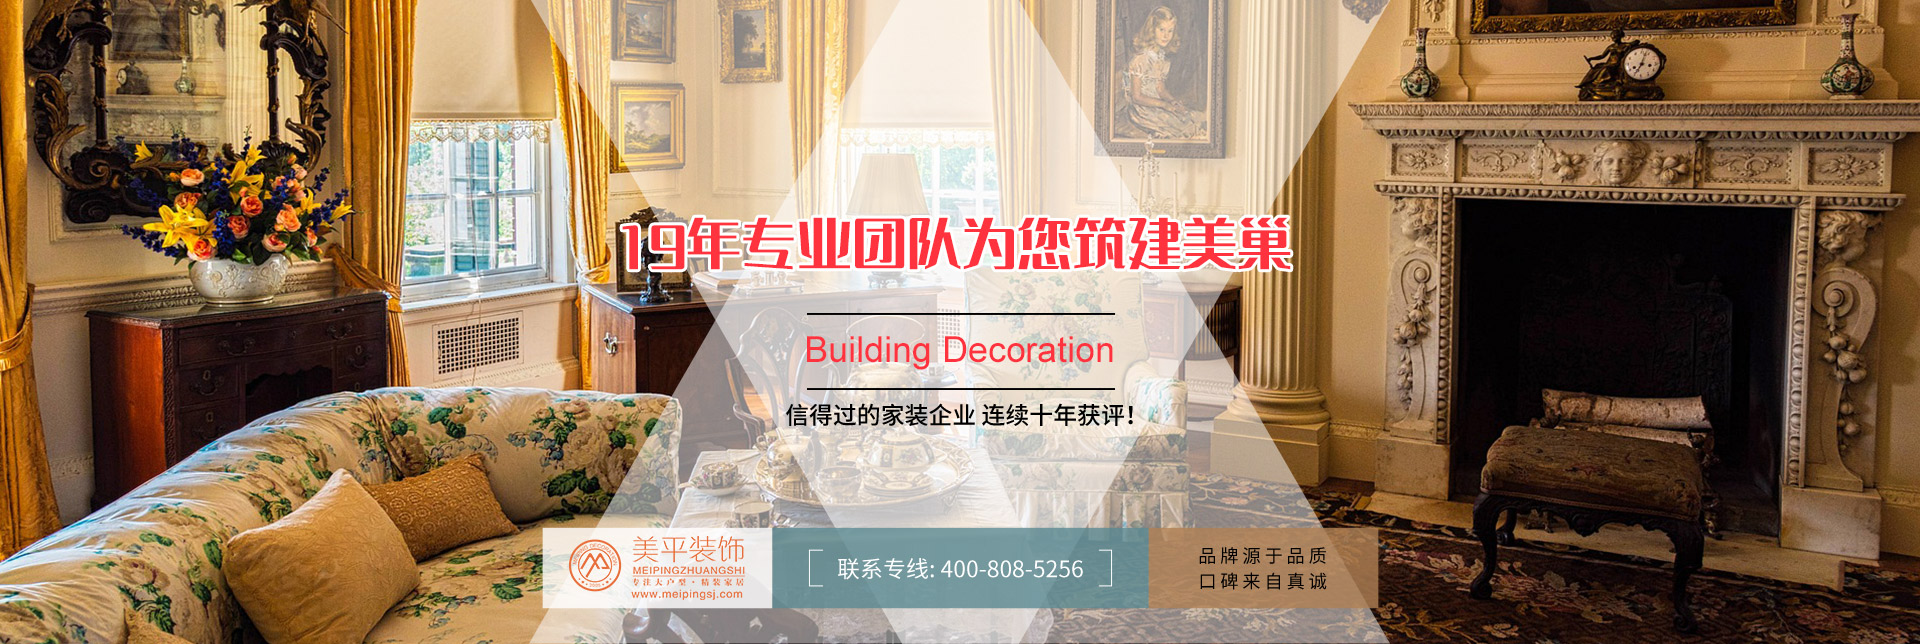 上海美平建筑裝飾工程有限公司 